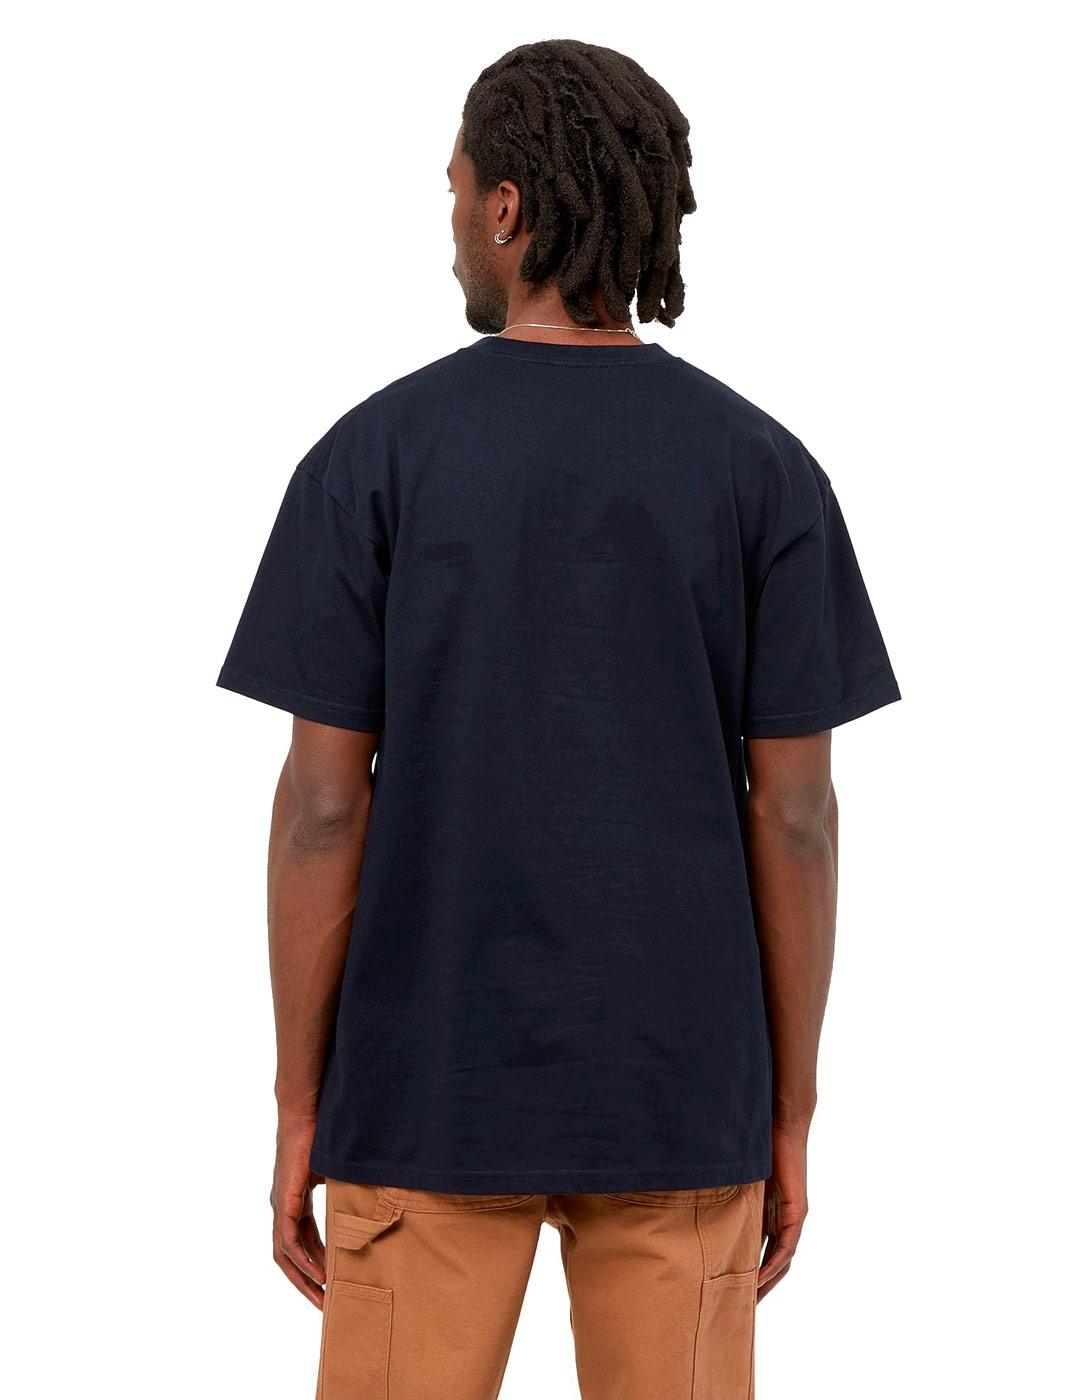 Camiseta Carhartt S/S Chase Azul Marino